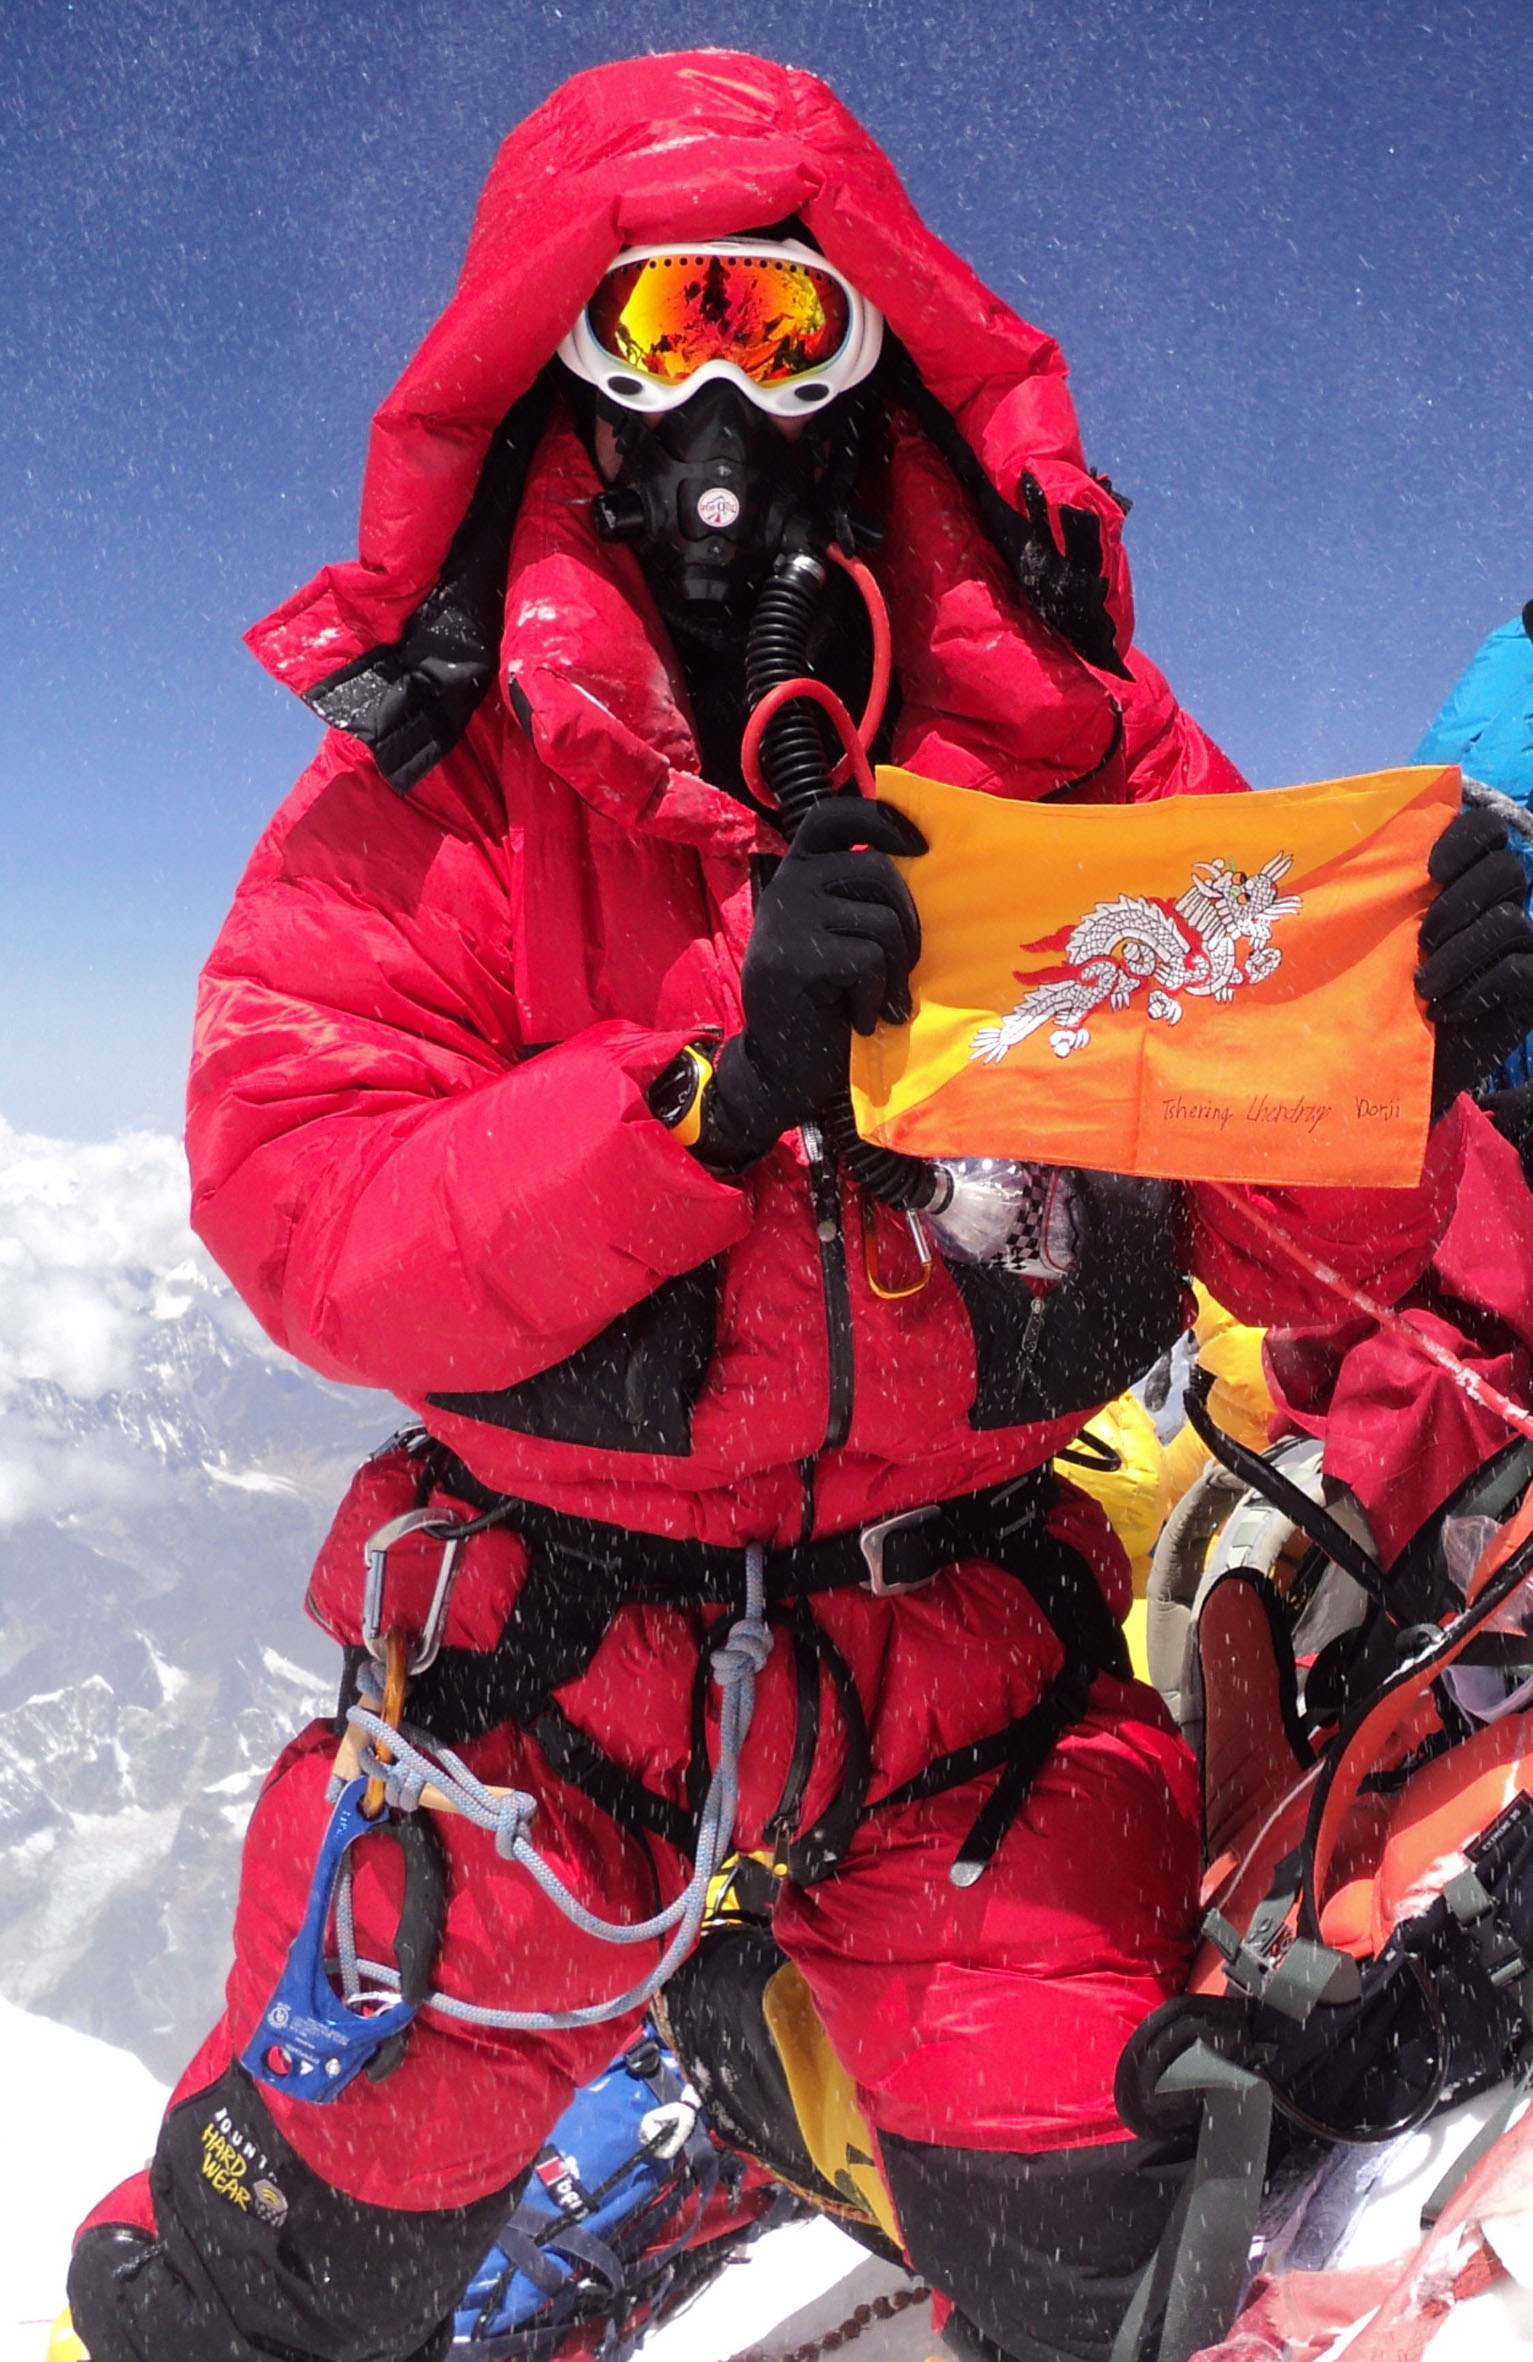 Bhutan Flag on Summit of Everest 2010